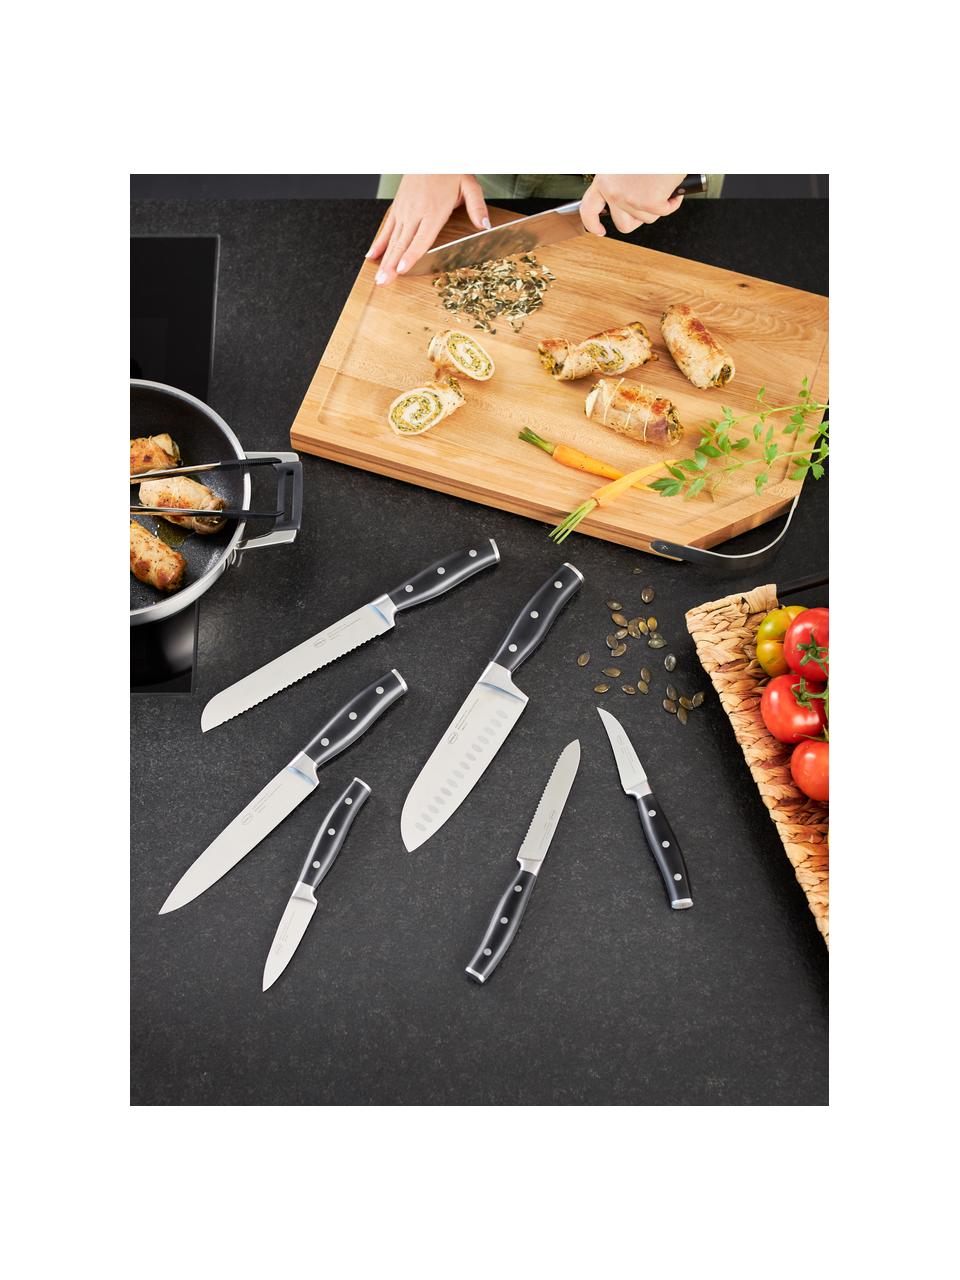 Cuisine mes met messenblok, set van 7, Mes: edelstaal X50CrMOV15, Zilverkleurig, zwart, bruin, Set in verschillende formaten